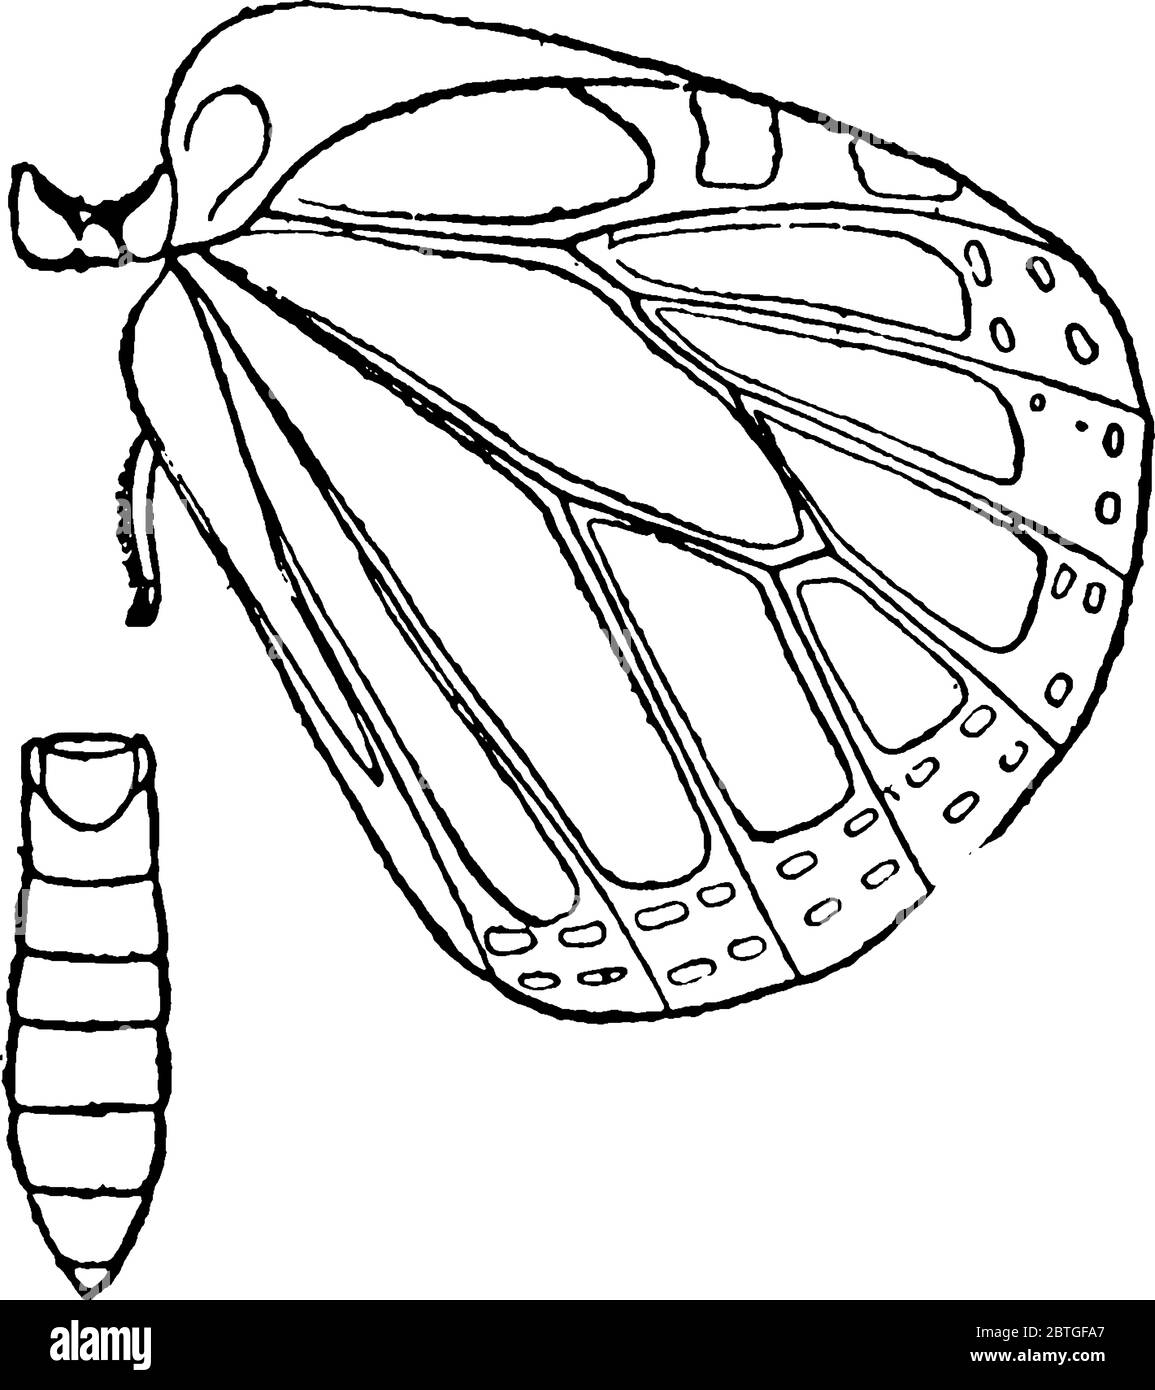 La sezione del corpo di Monarch Butterfly dopo la testa è chiamata torace, questo diagramma mostra sezione Metathorax del torace., disegno di linea vintage o incisione Illustrazione Vettoriale